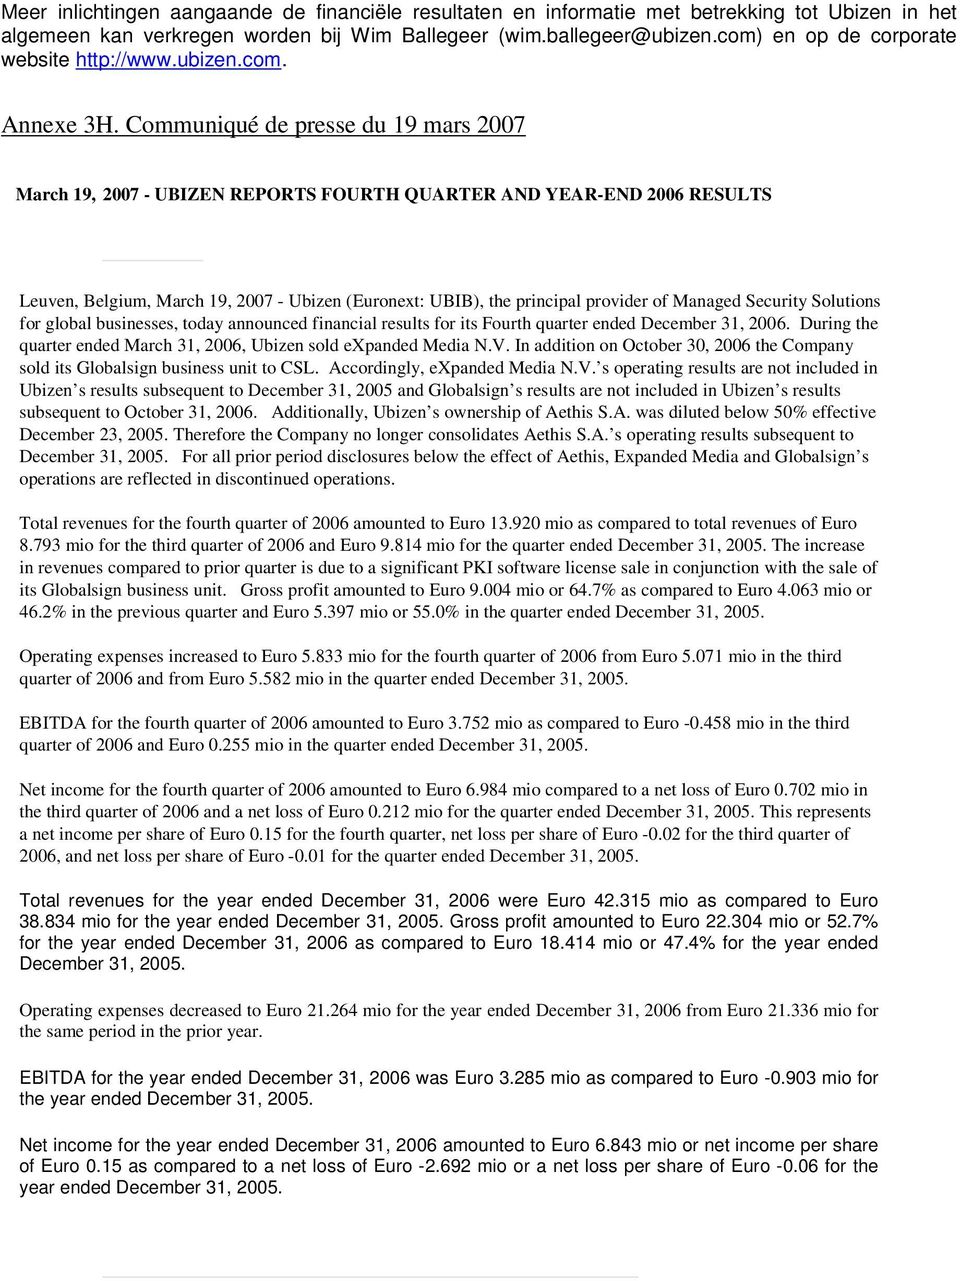 Communiqué de presse du 19 mars 2007 March 19, 2007 - UBIZEN REPORTS FOURTH QUARTER AND YEAR-END 2006 RESULTS Leuven, Belgium, March 19, 2007 - Ubizen (Euronext: UBIB), the principal provider of